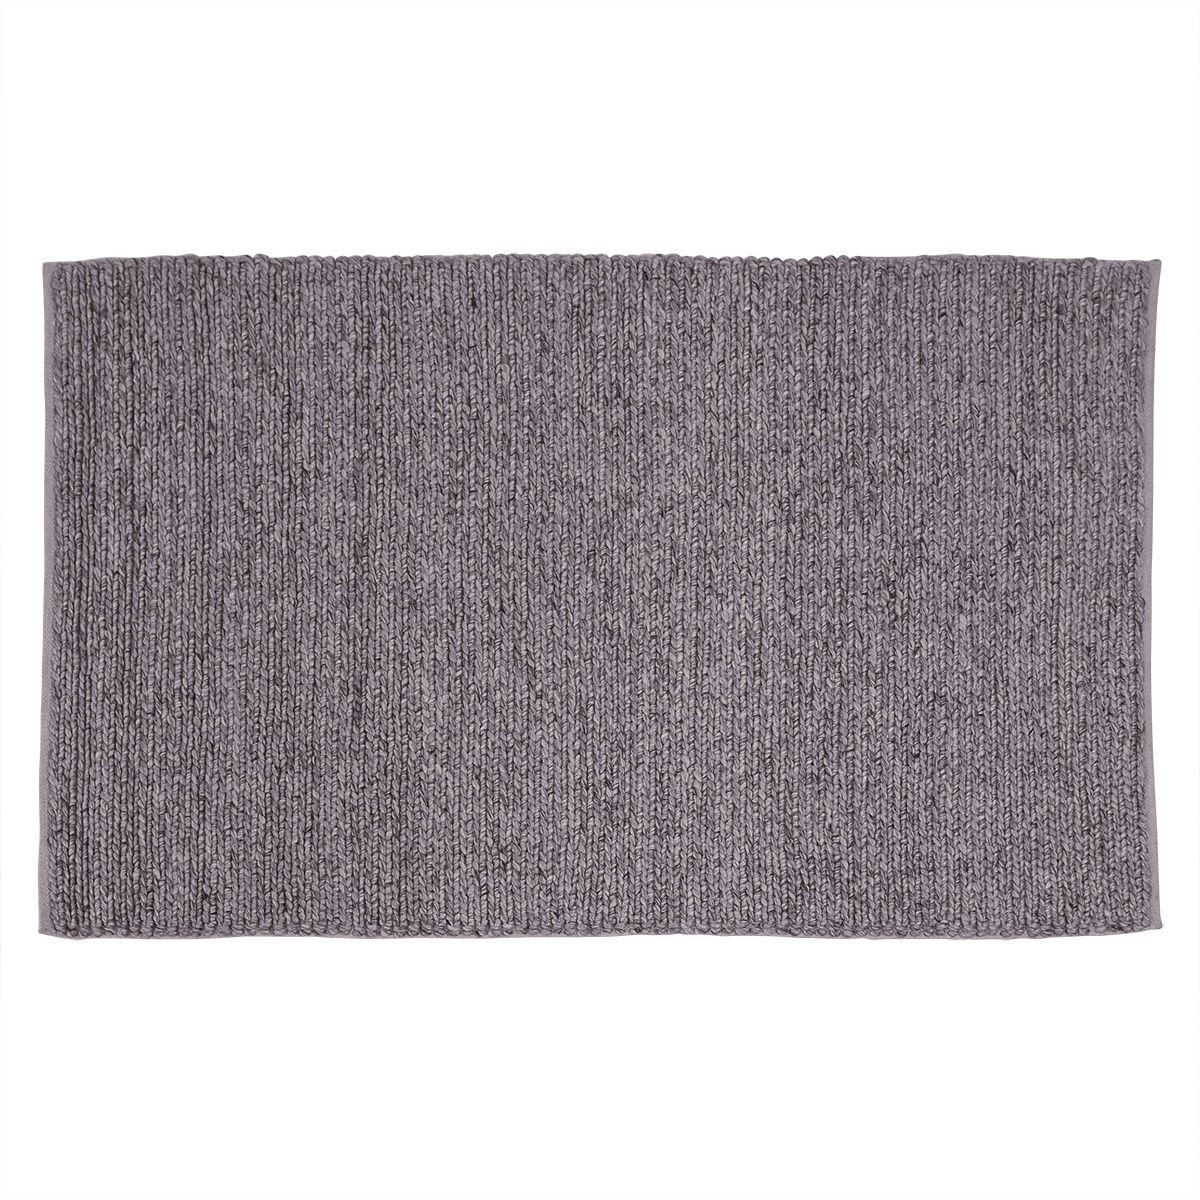 Tapis laine gris clair 170 x 120 cm